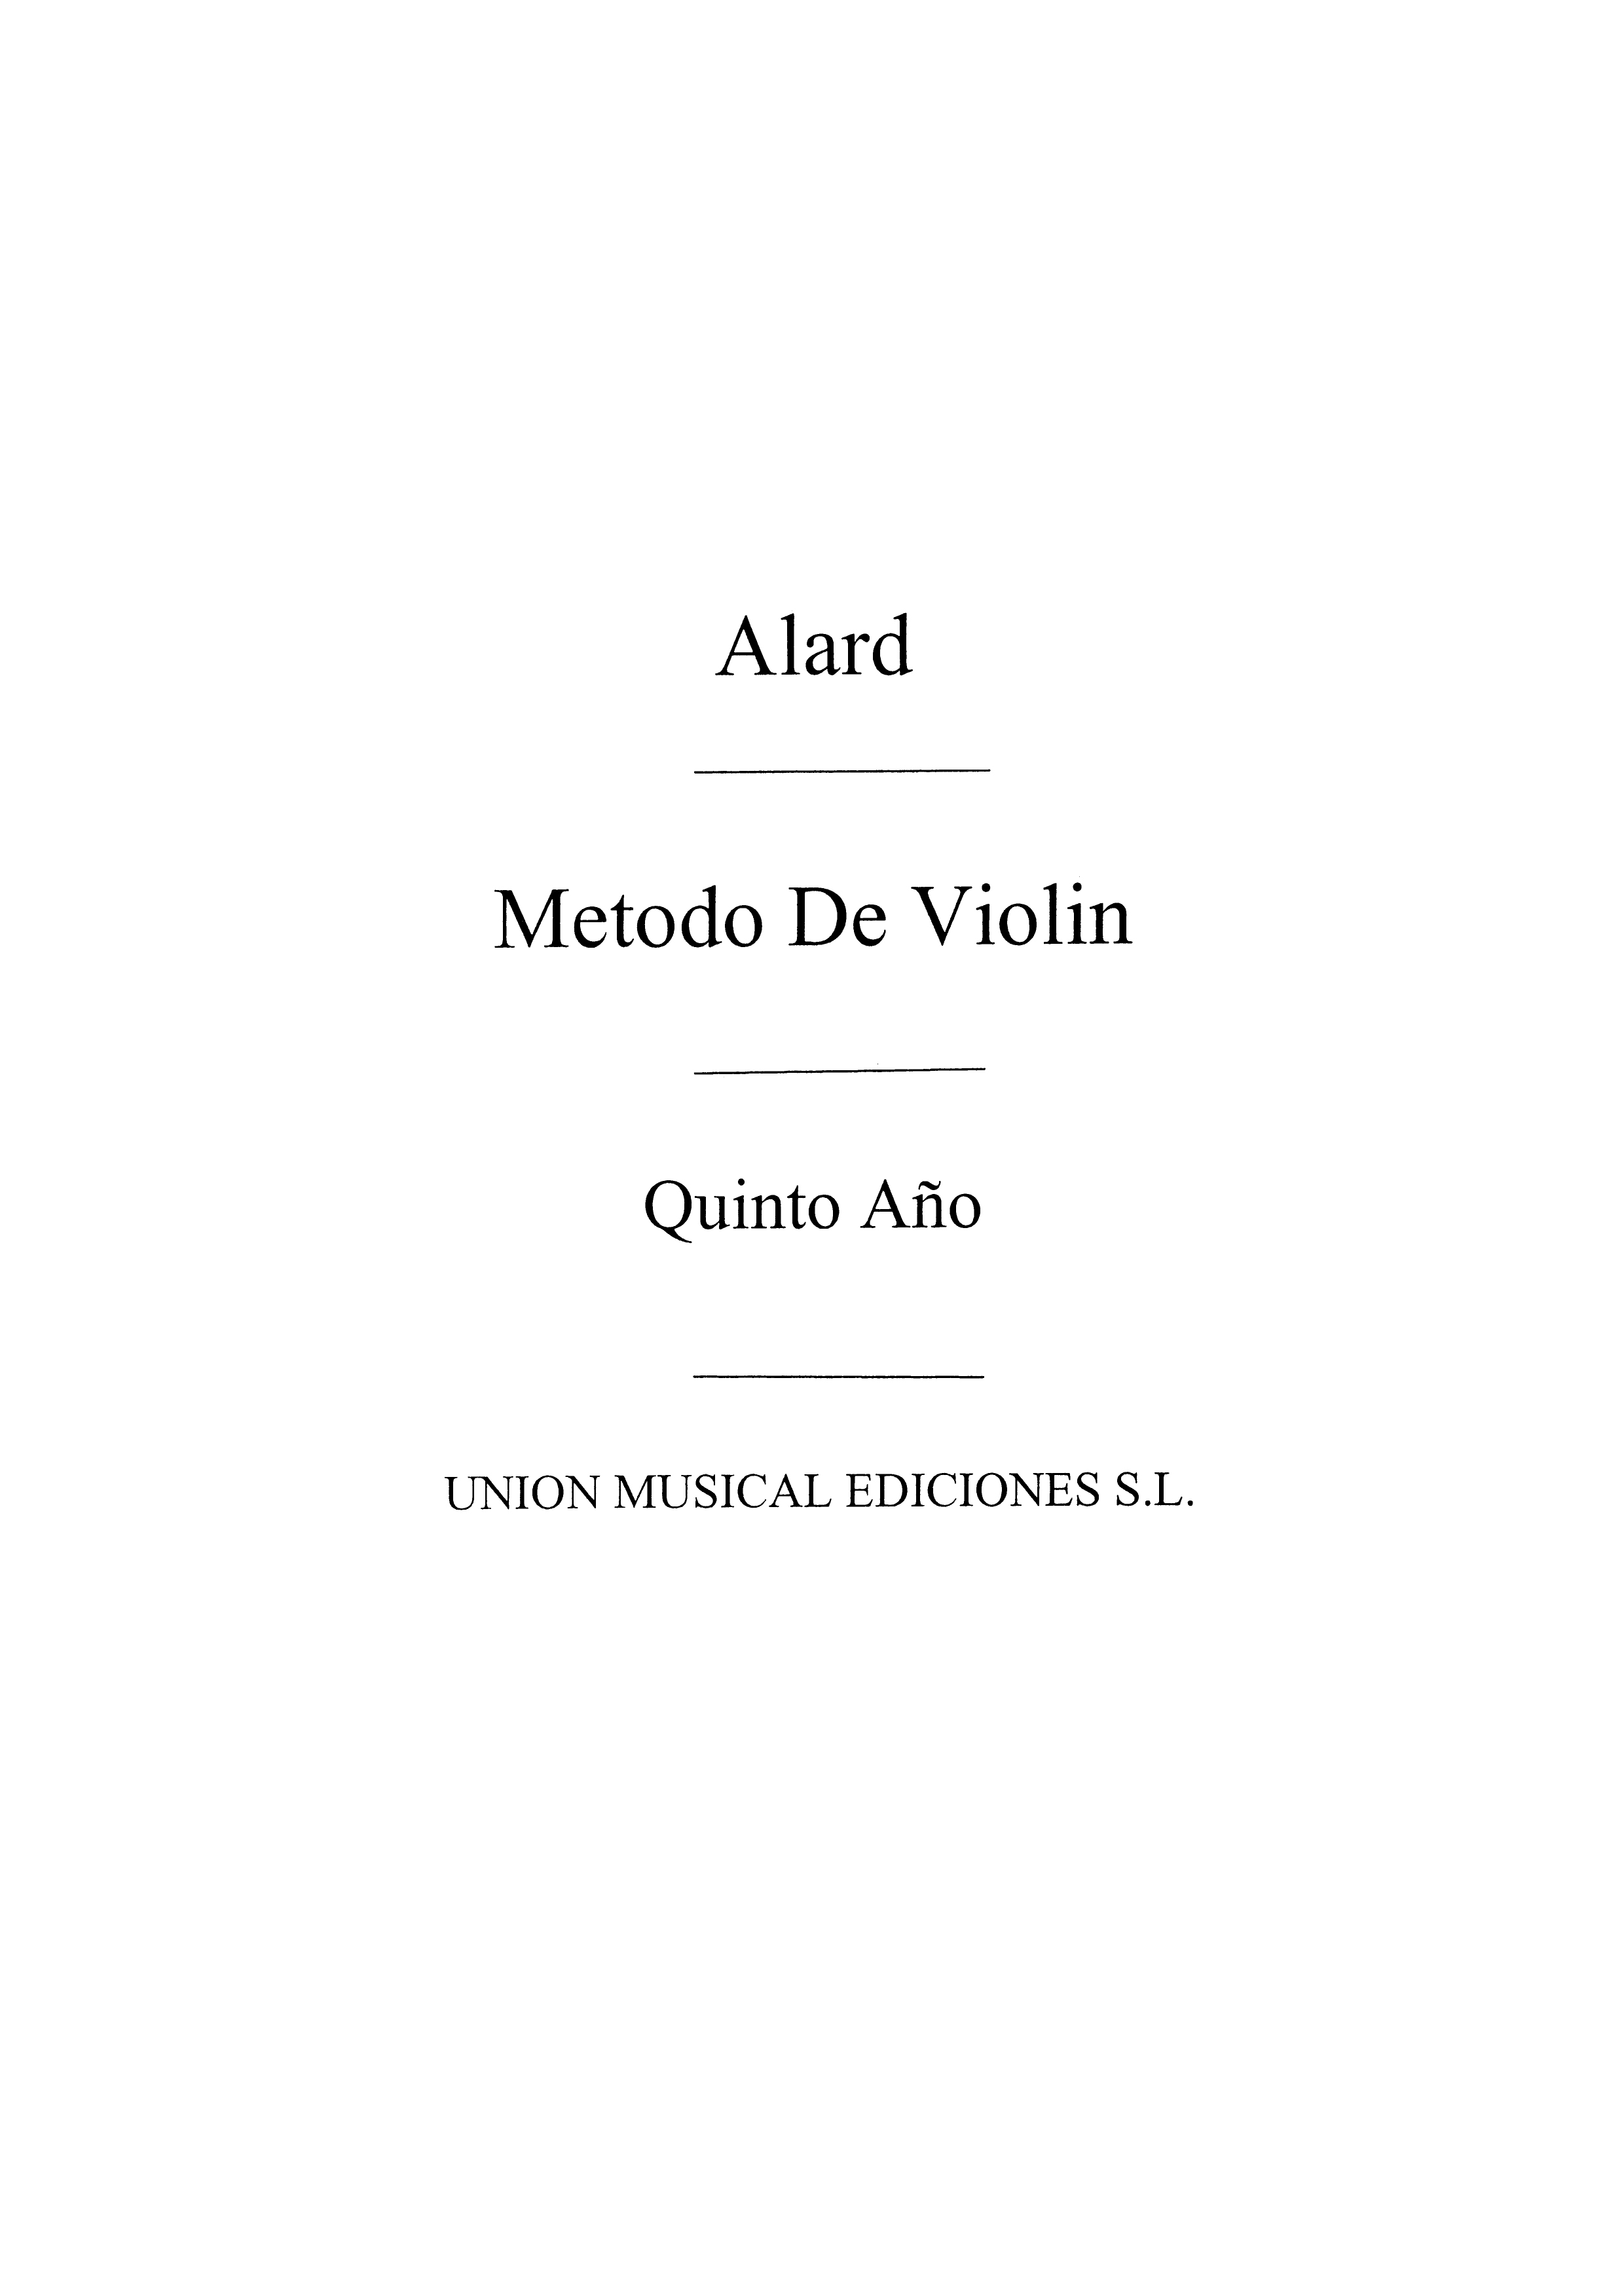 Alard: Metodo Violin Volume 5